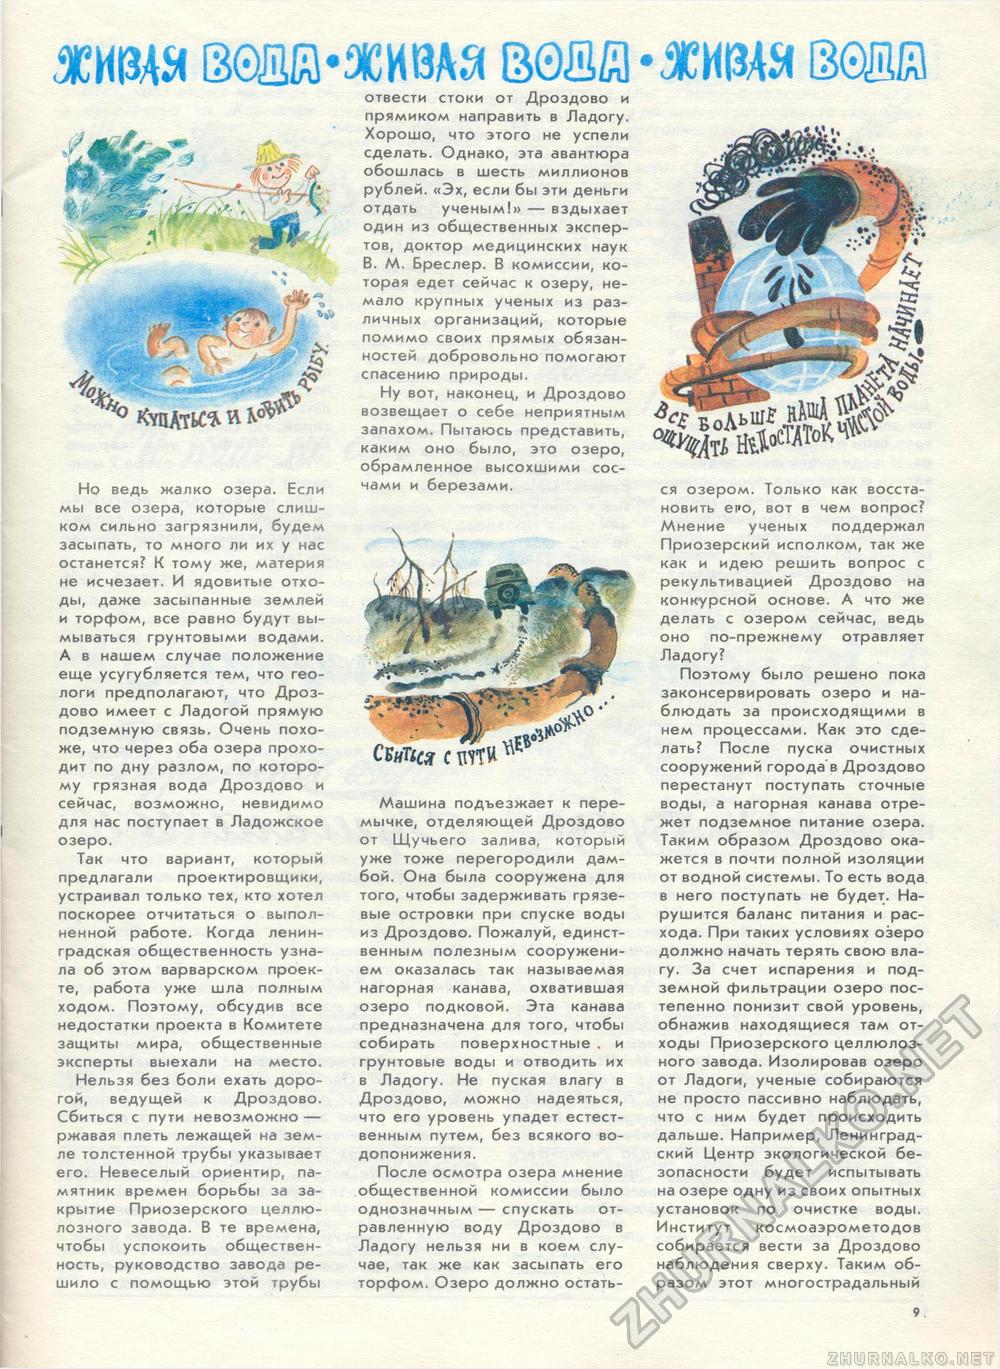  1989-05,  14